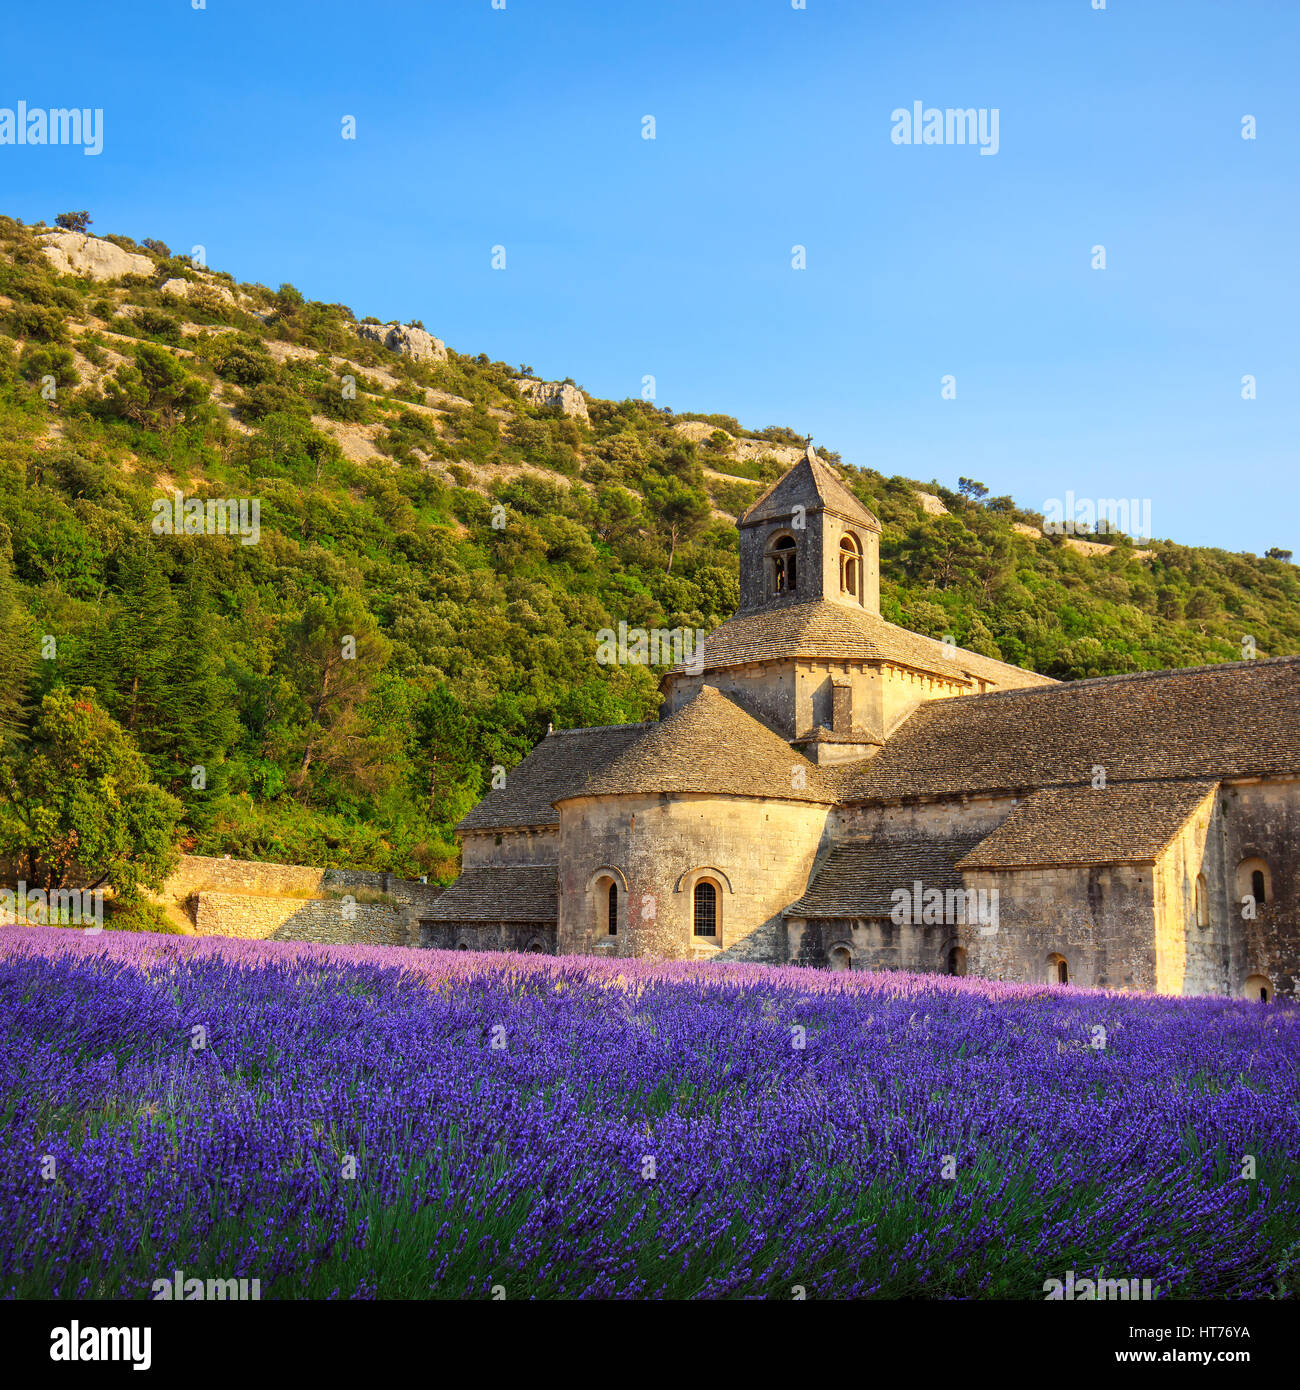 Abtei von Senanque und blühenden Zeilen Lavendel Blumen bei Sonnenuntergang. Gordes, Luberon, Vaucluse, Provence, Frankreich, Europa. Stockfoto